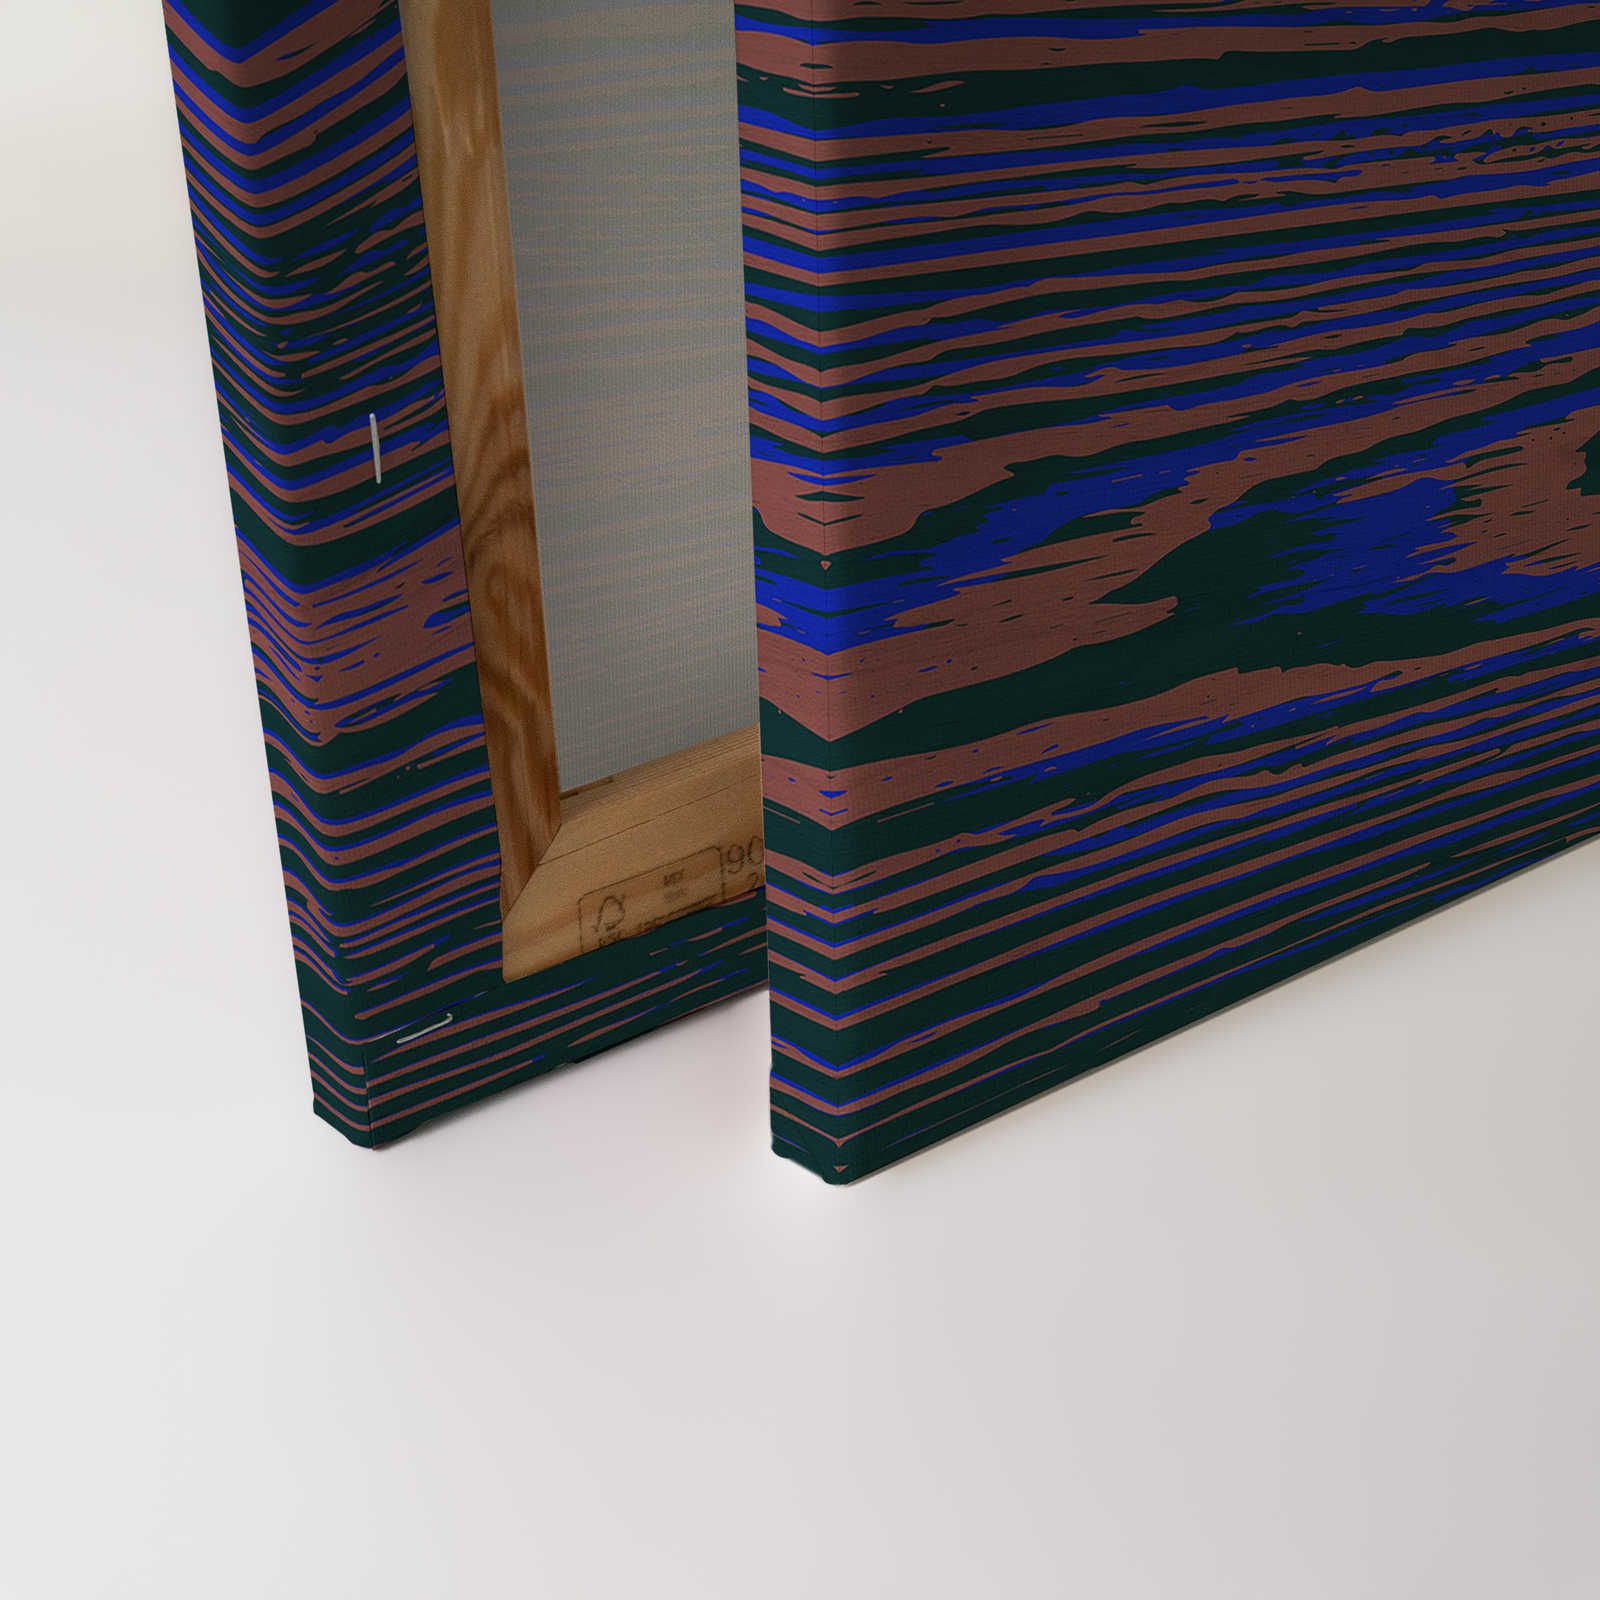             Kontiki 3 - Quadro su tela Neon Wood Grain, Viola e Nero - 0,90 m x 0,60 m
        